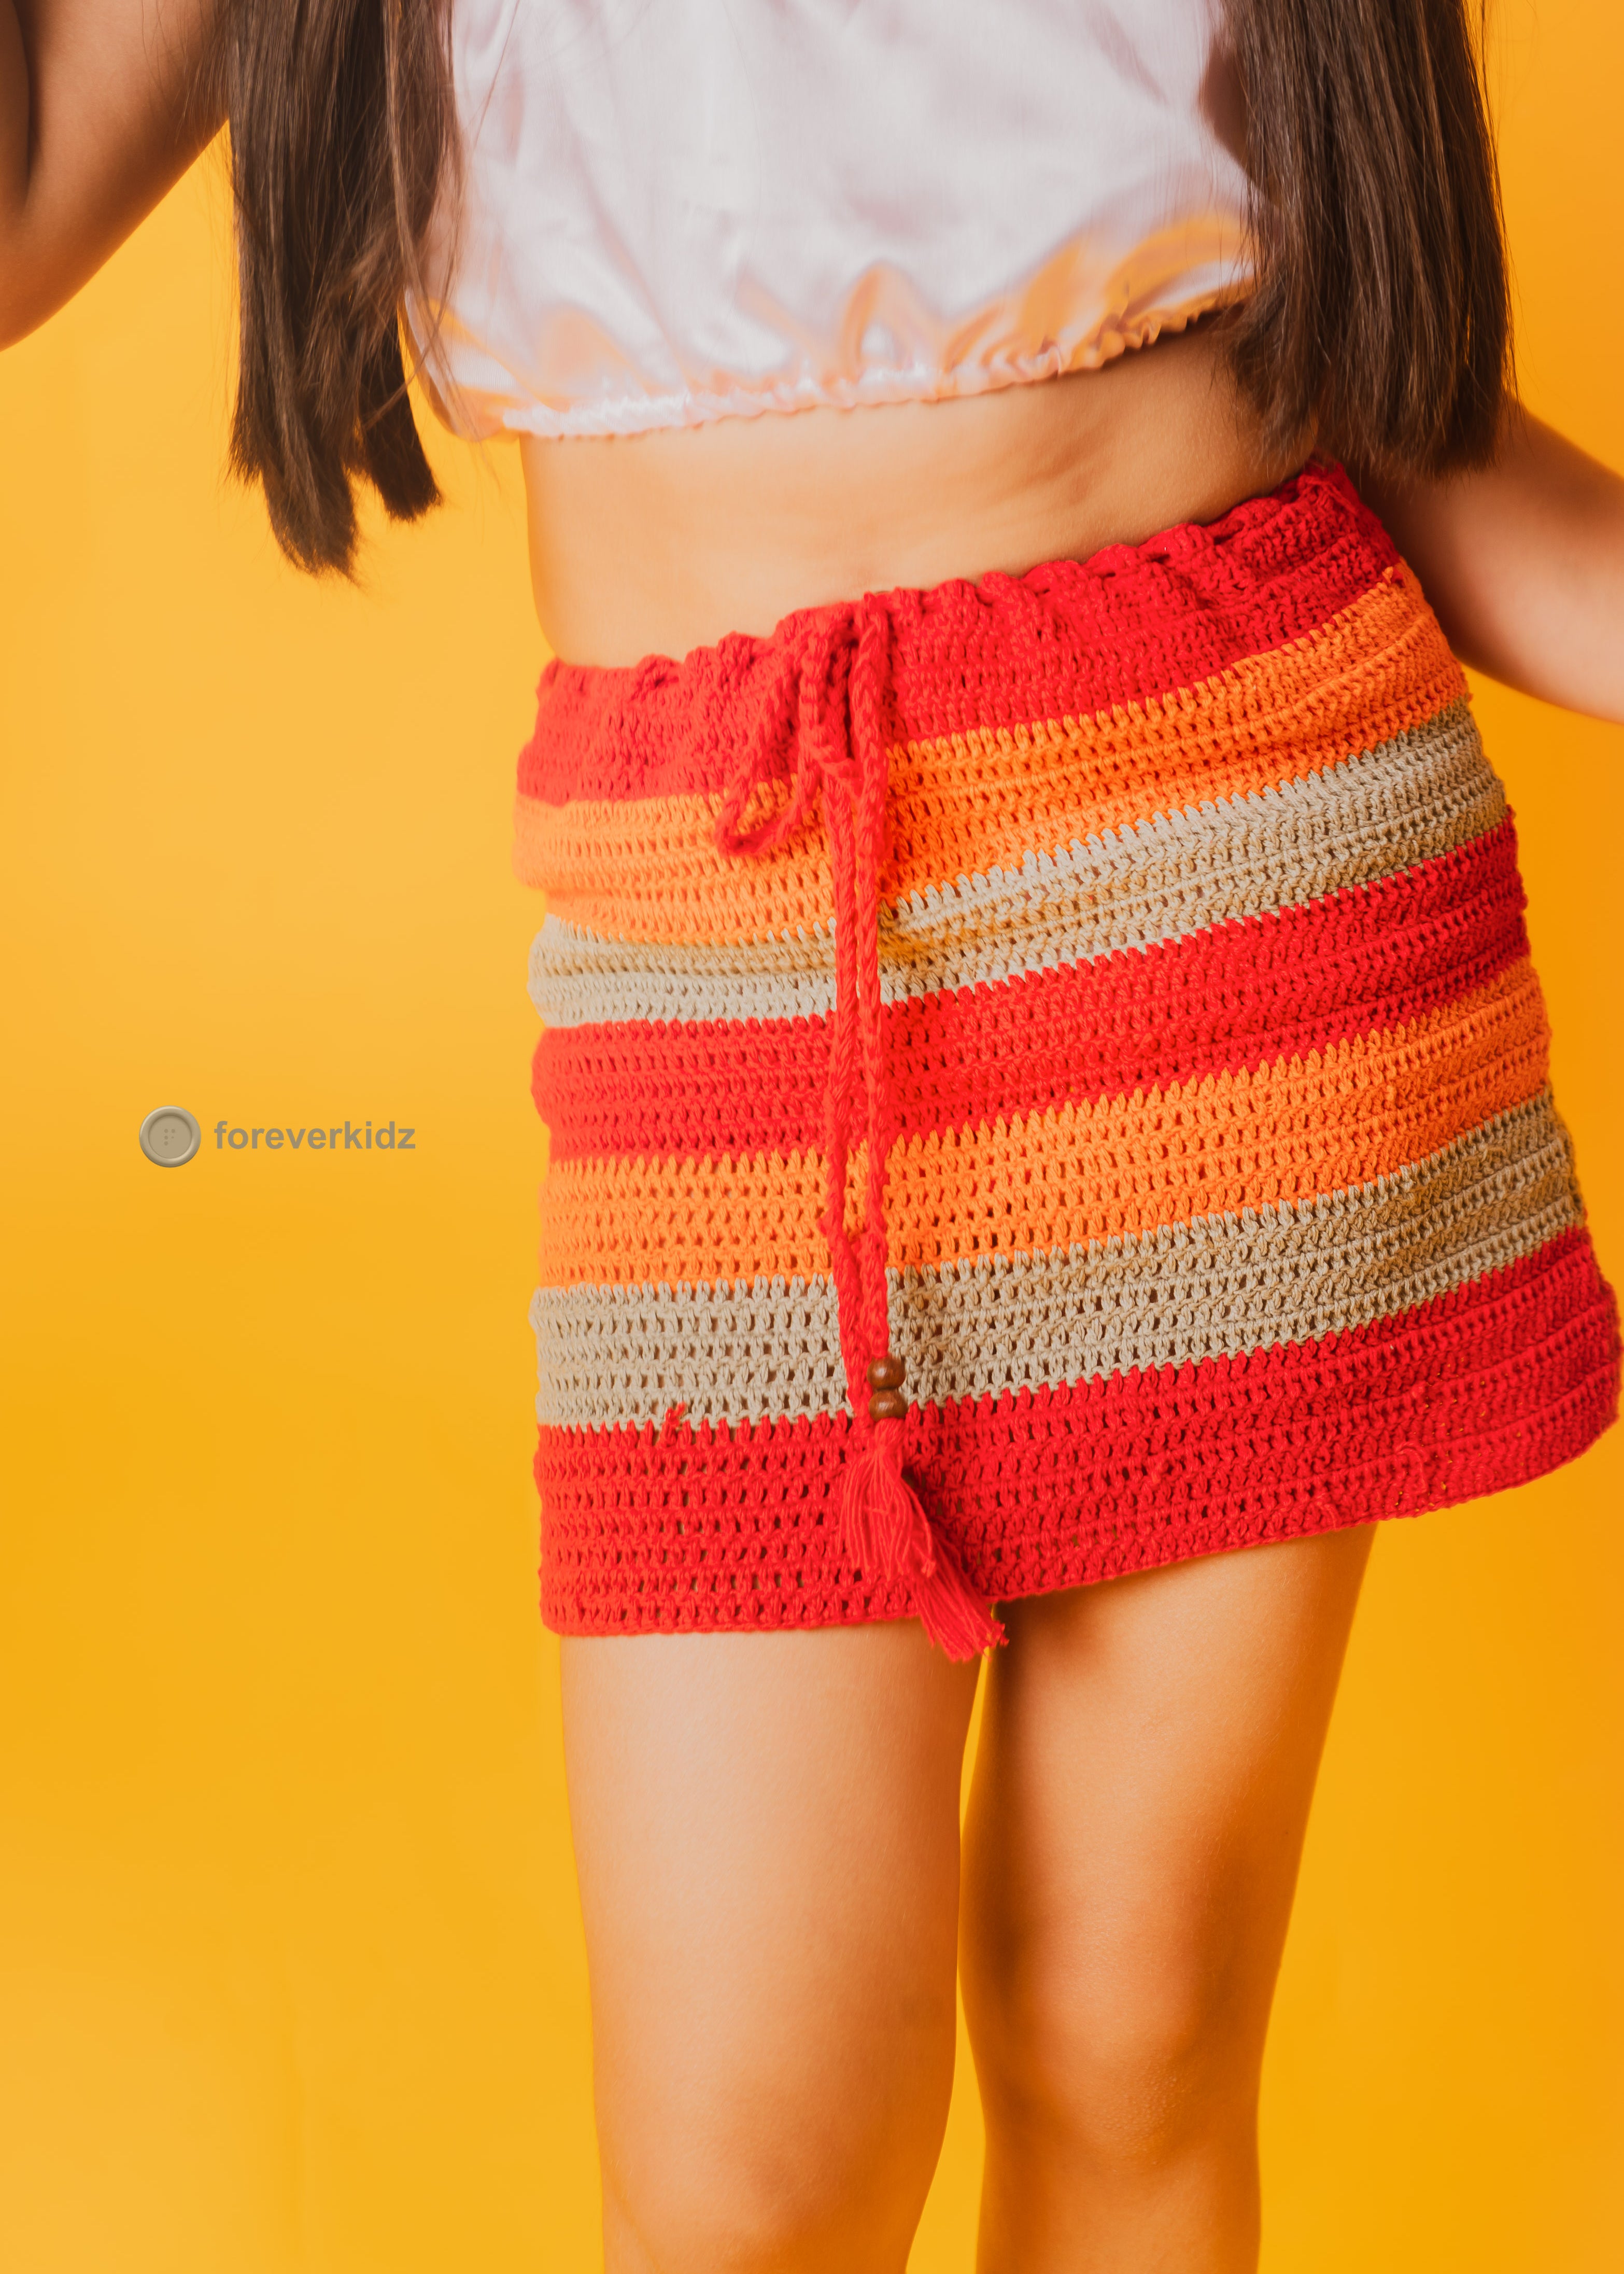 Stripped Crochet Skirt for Little Girls 